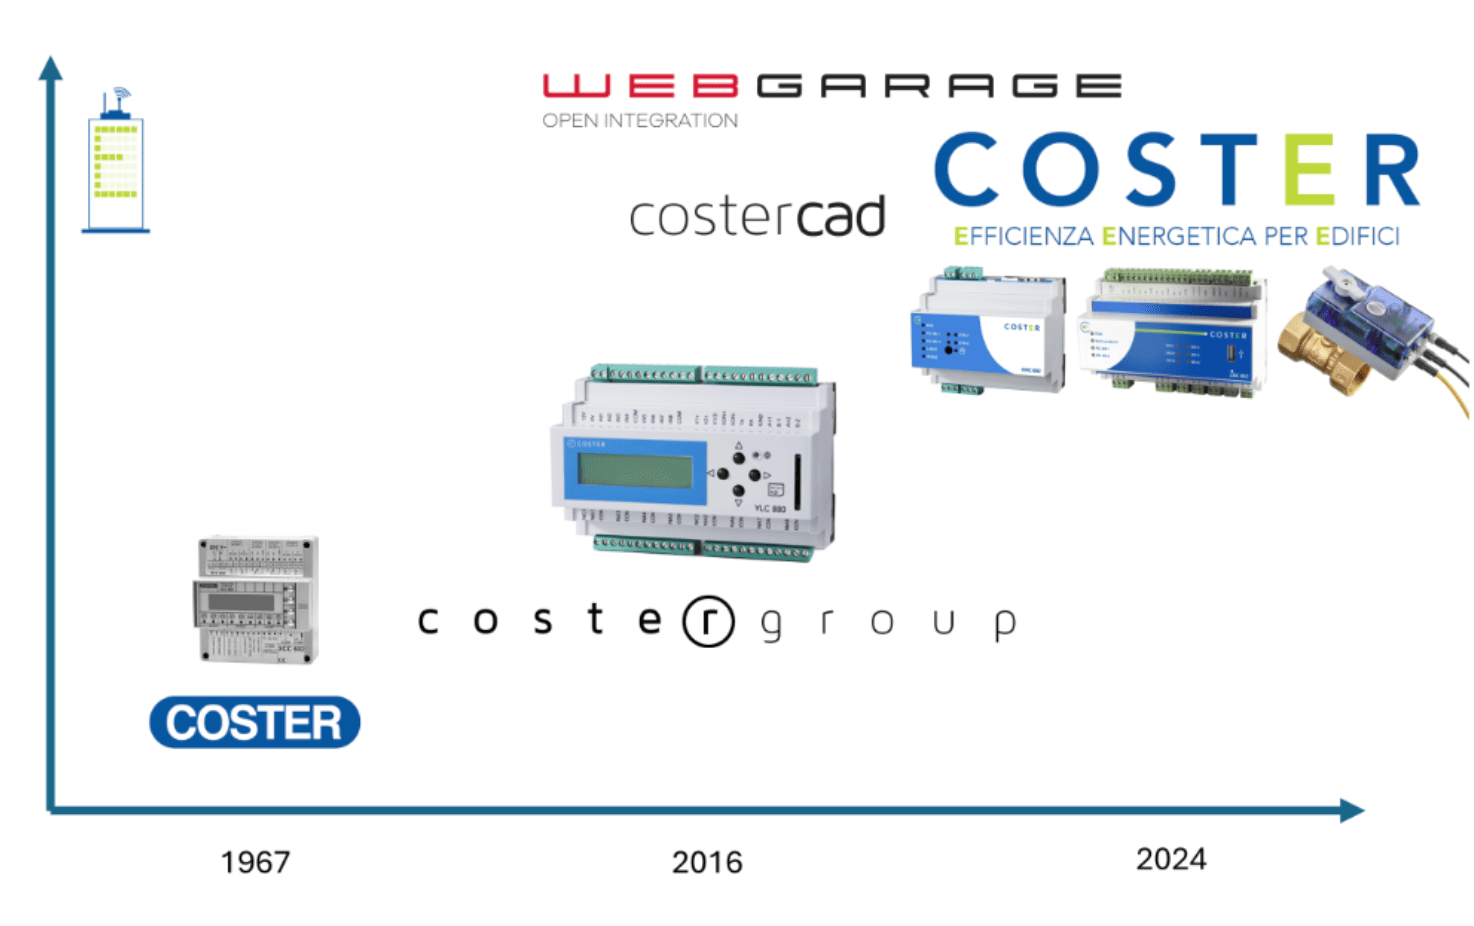 L’evoluzione di COSTER nei suoi quasi 60 anni sul mercato. Fonte: elaborazione di foto di CosterGroup srl.